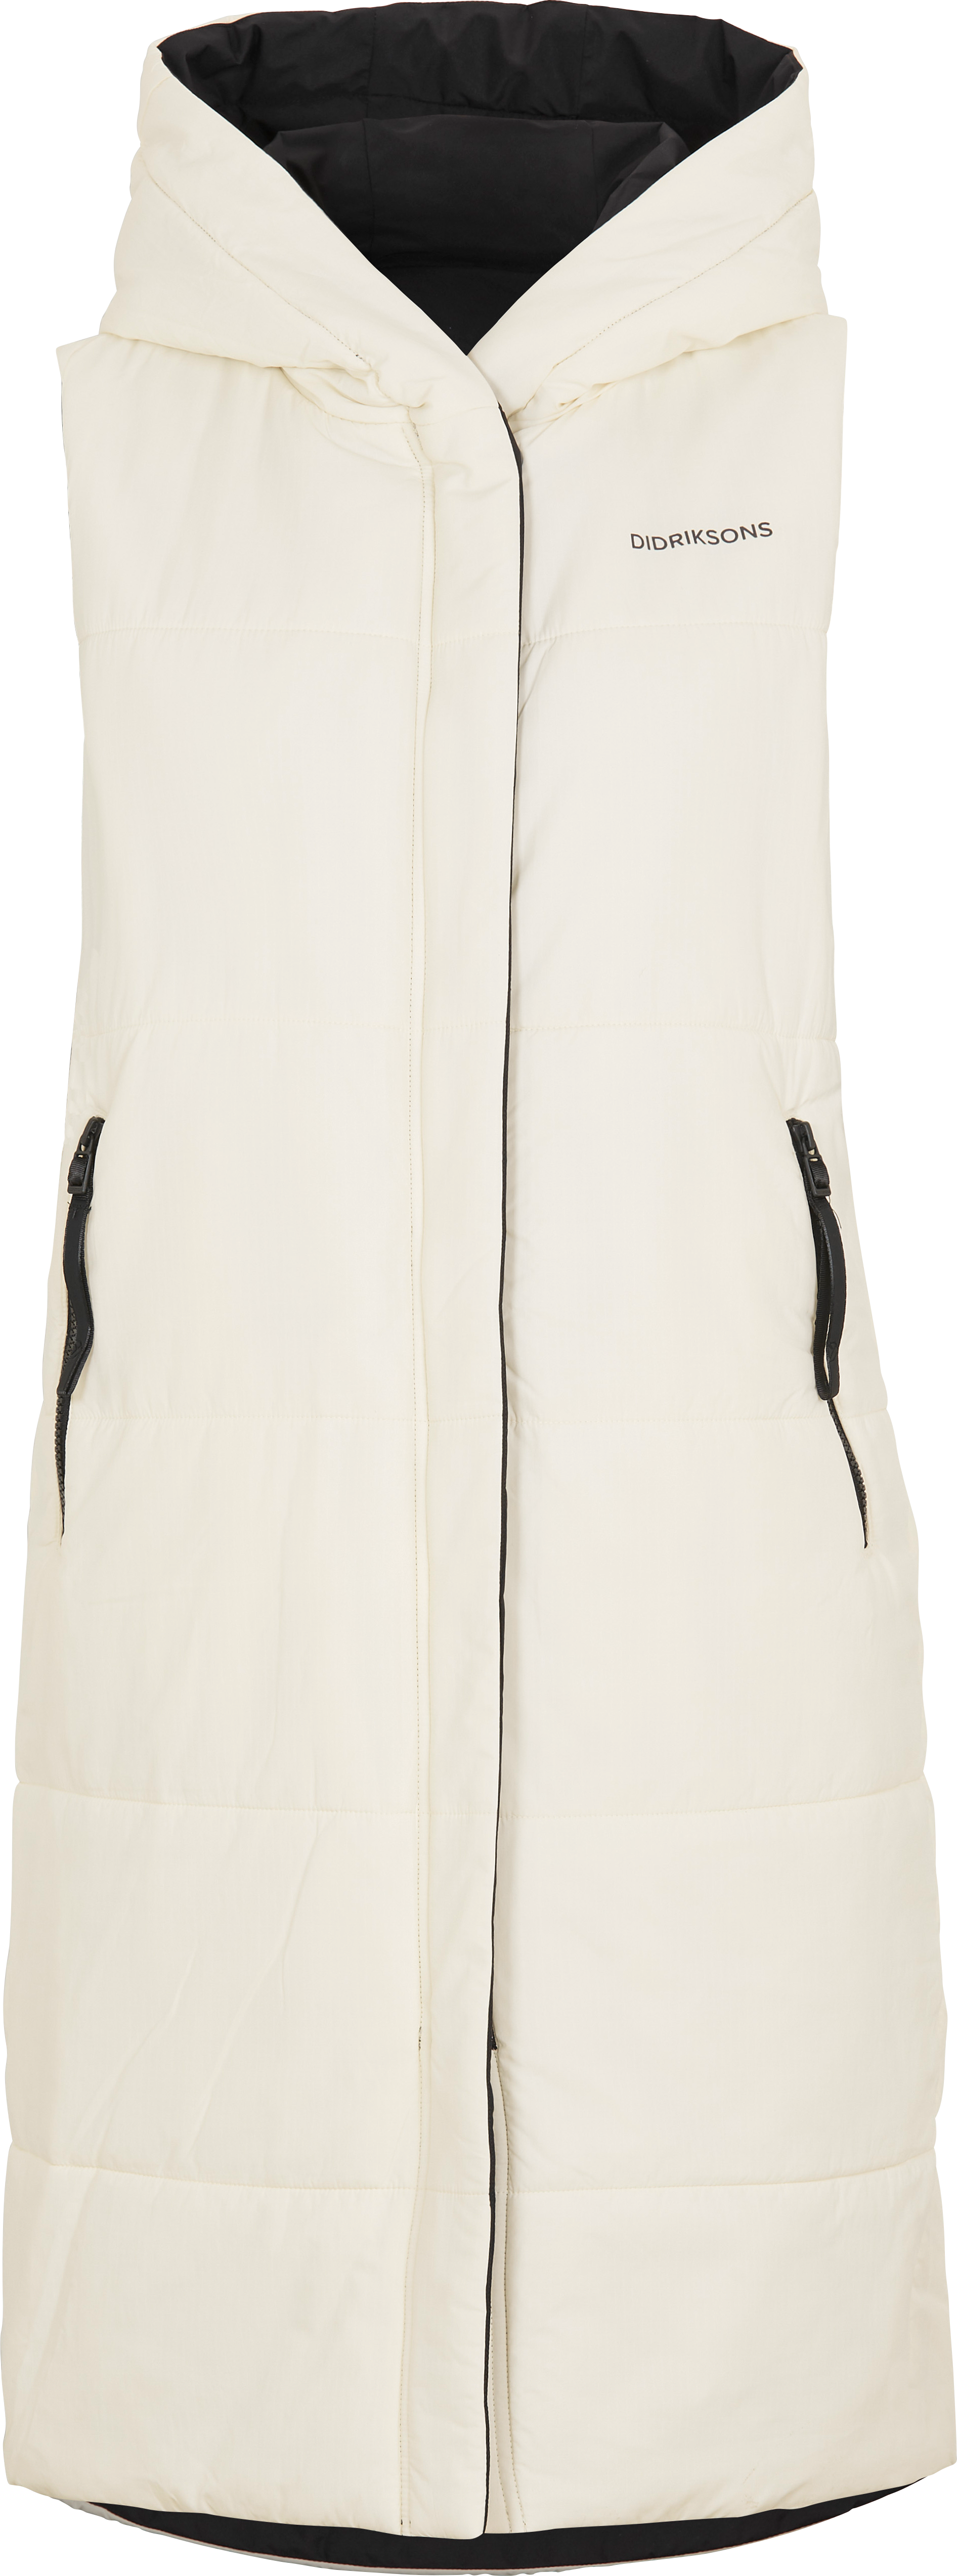 Aviva Reversible Women’s Vest White Foam/Black